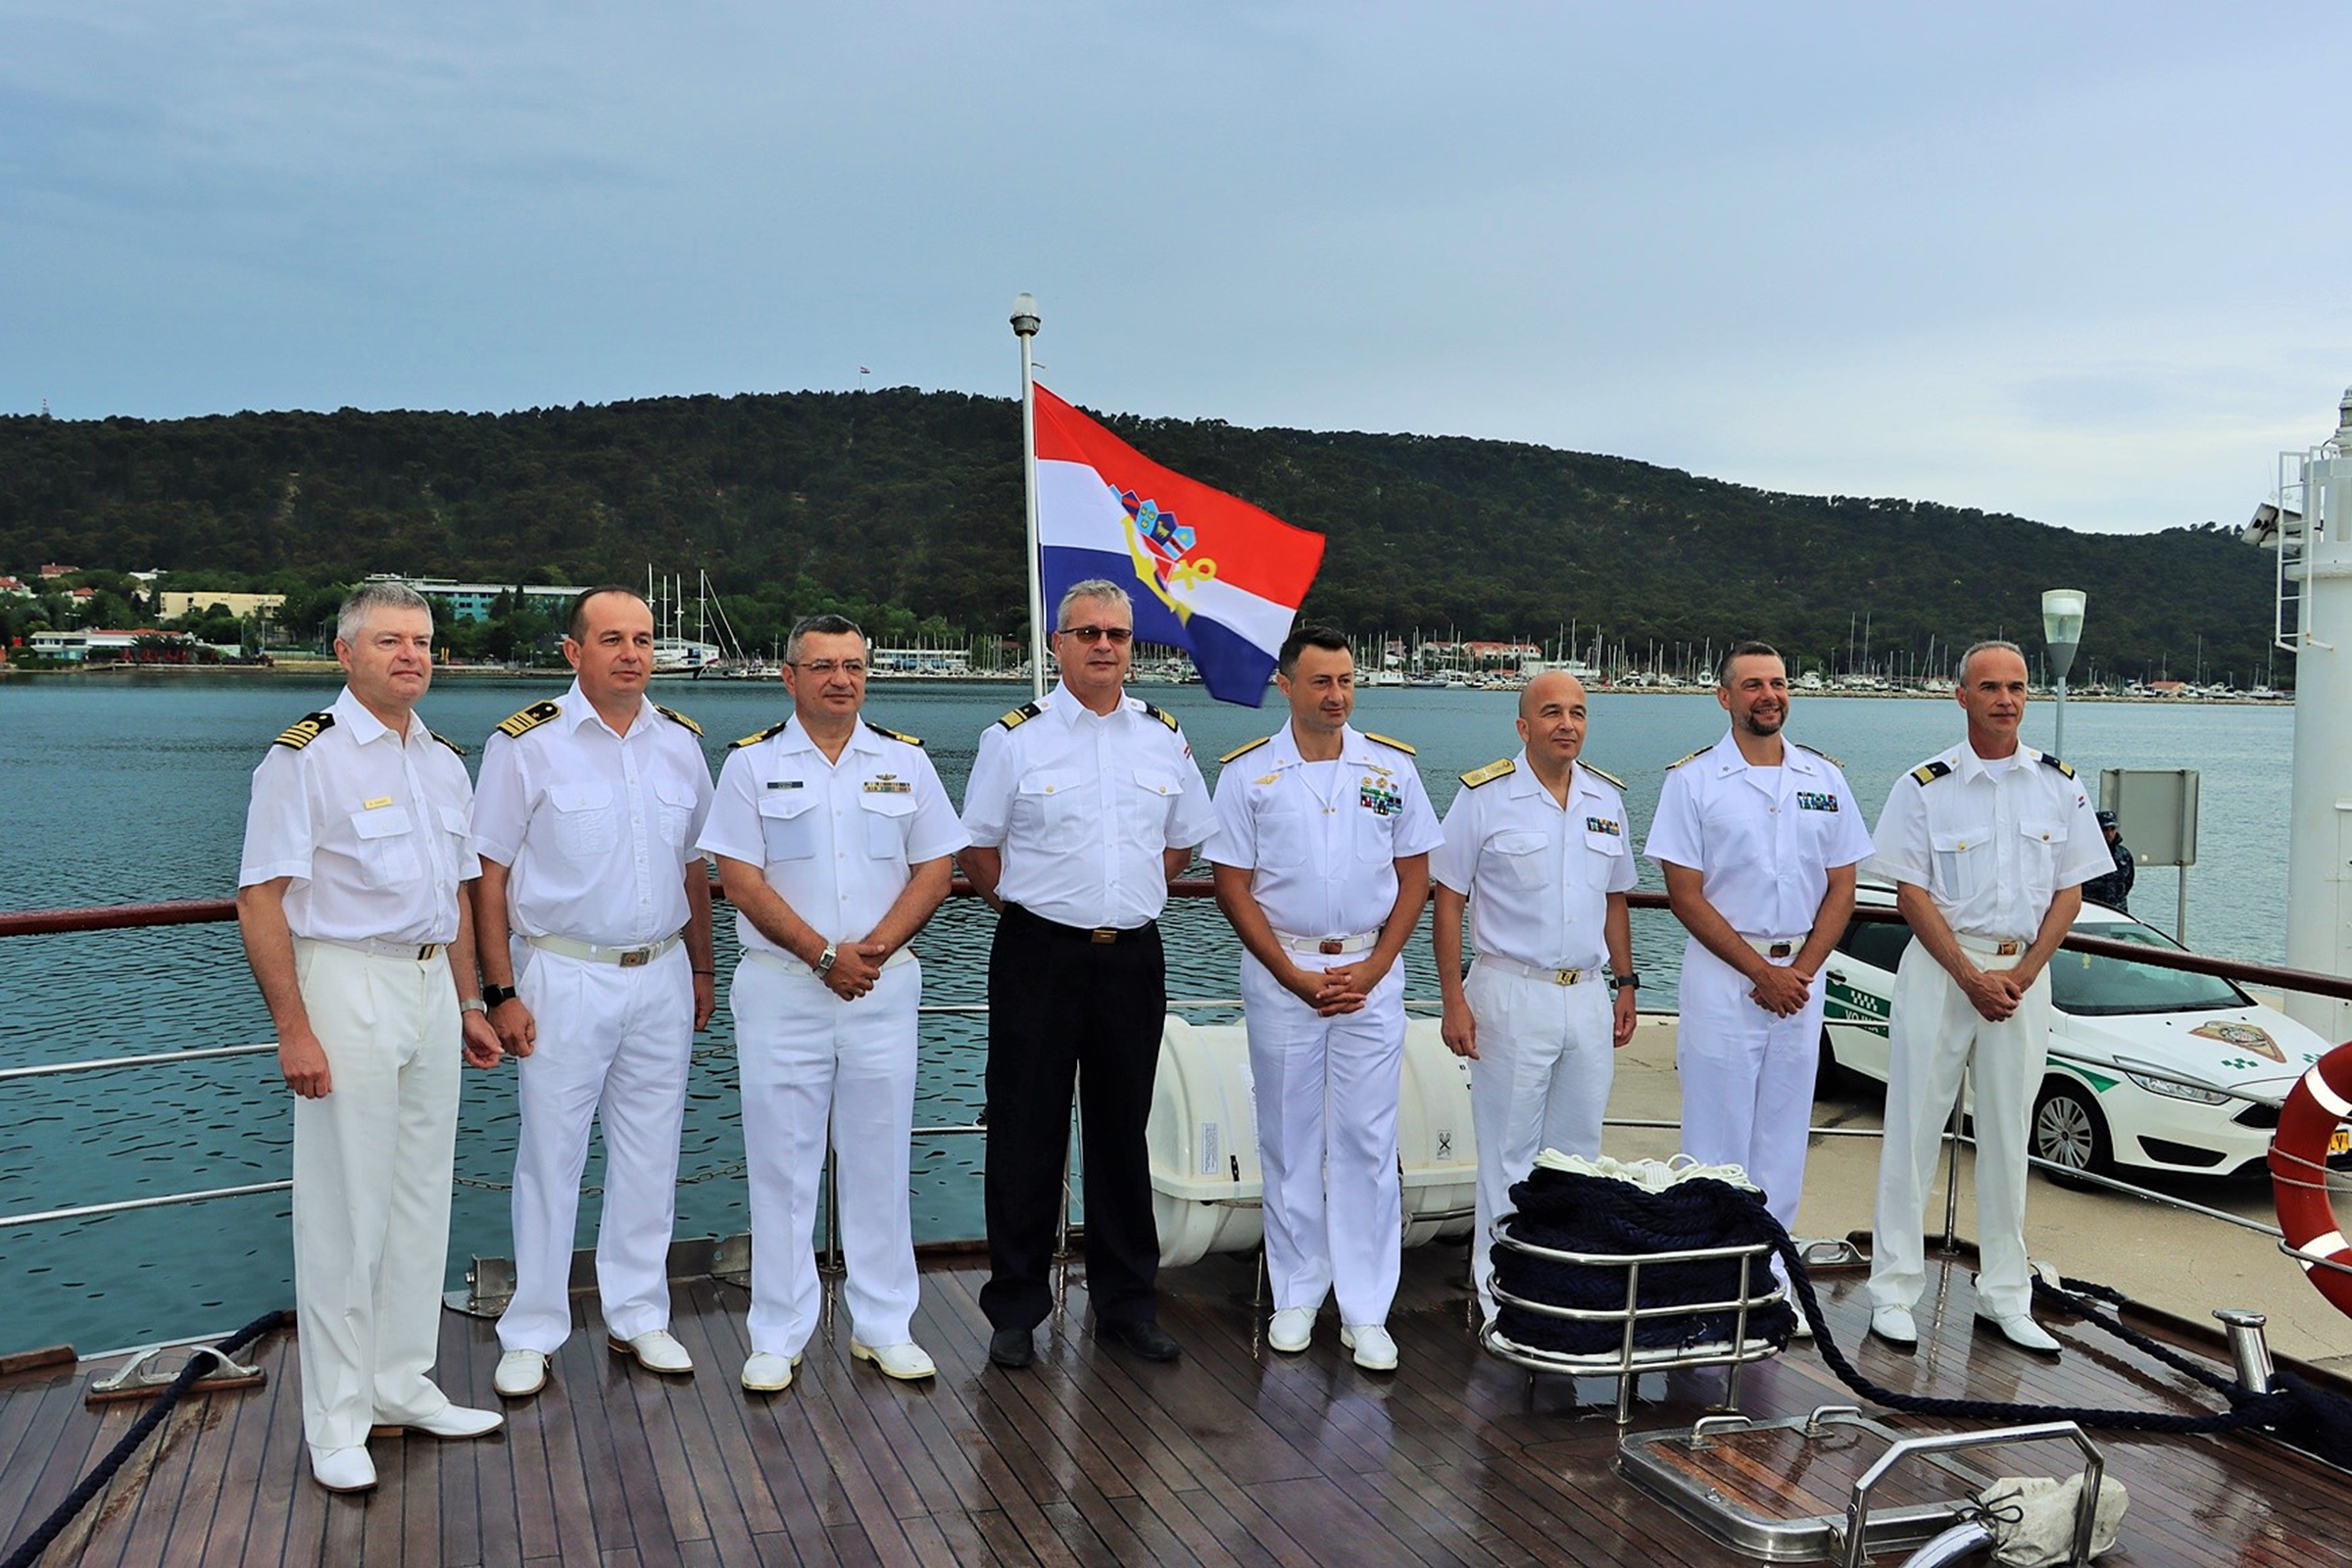 Završeno združeno djelovanje u Jadranskom moru MVV ADRION 22 LIVEX